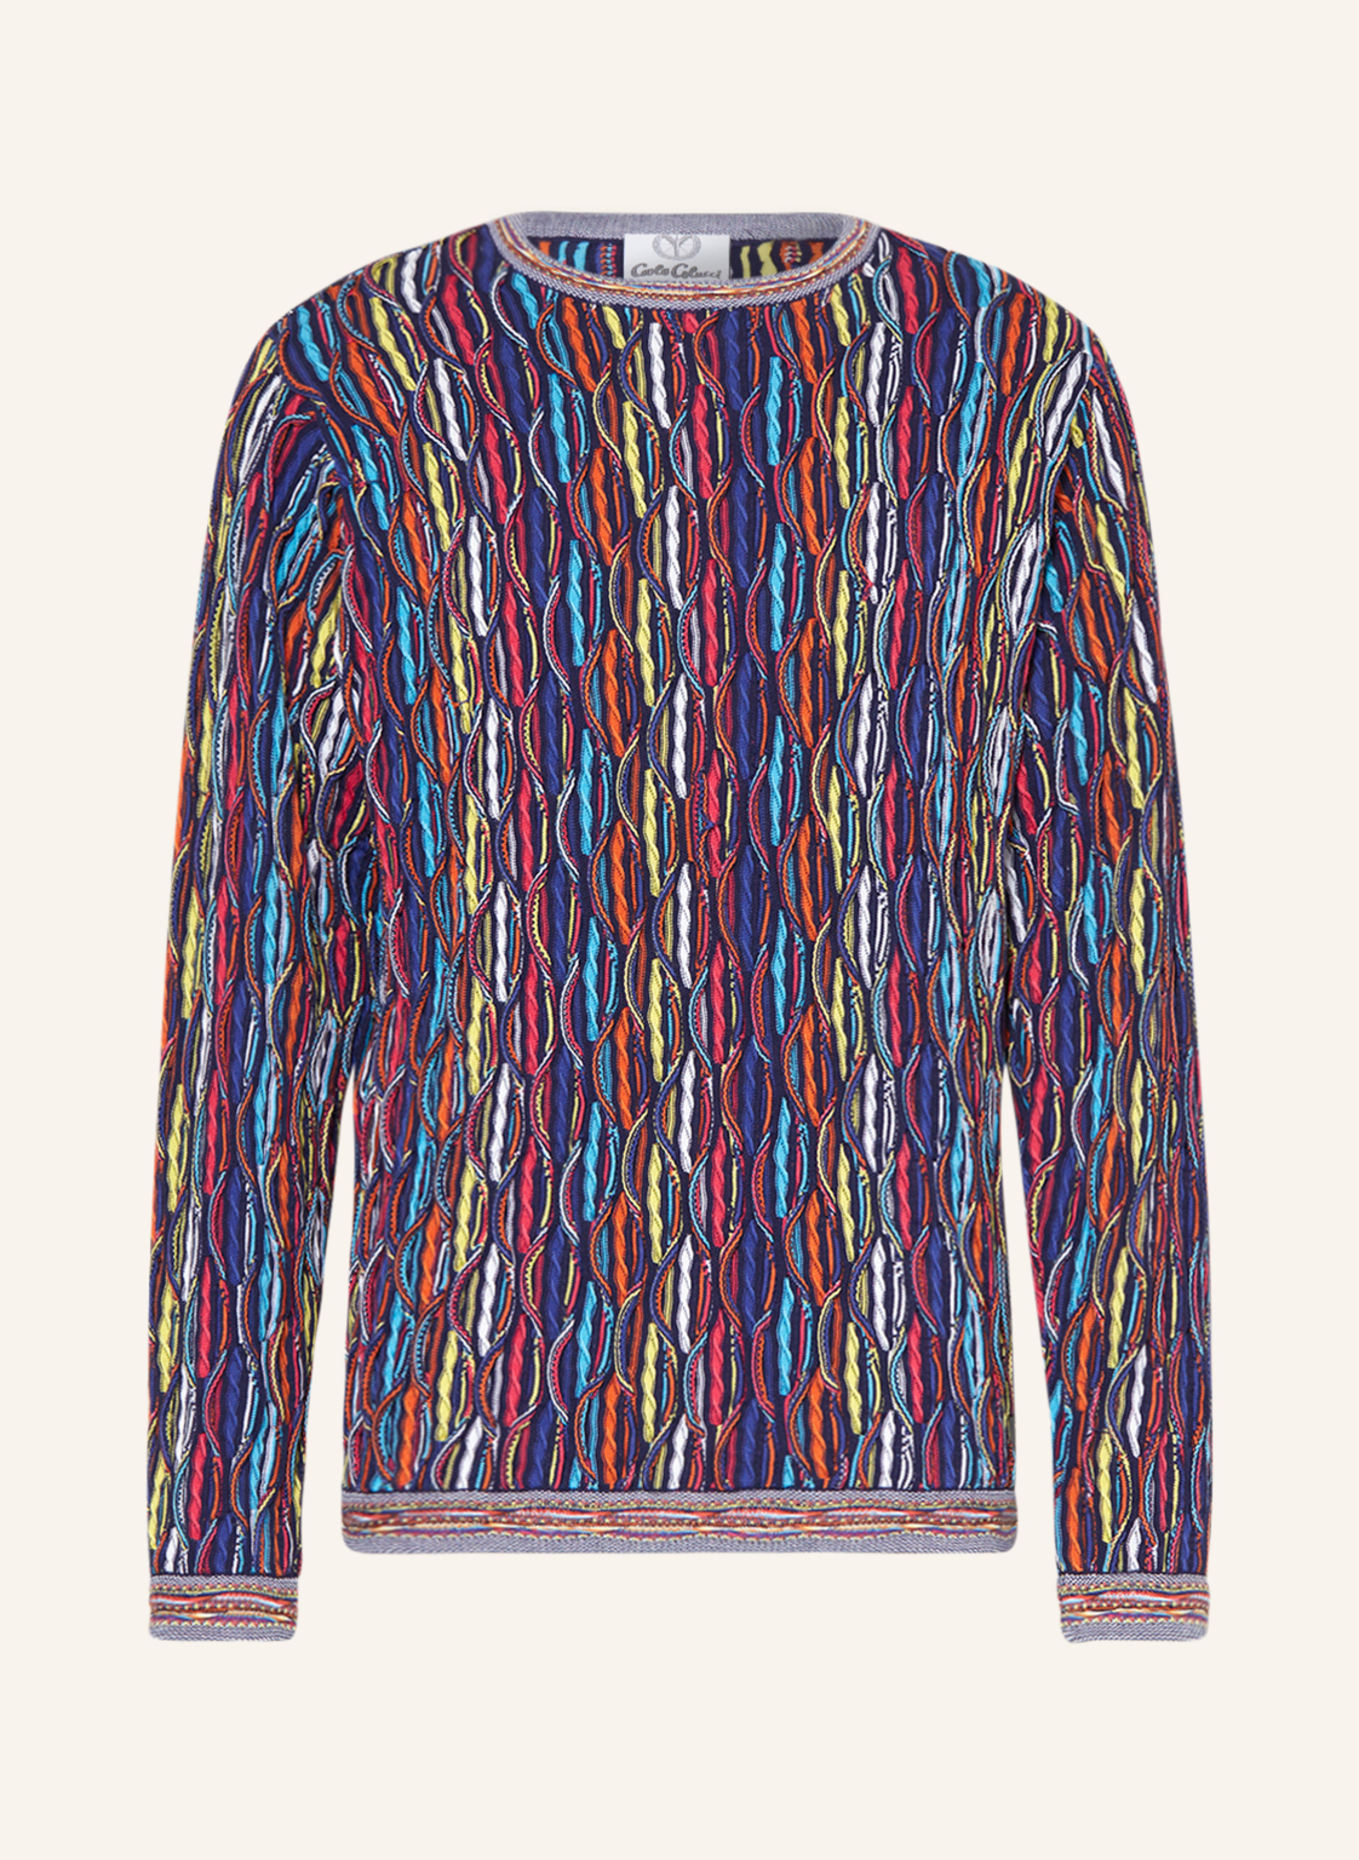 CARLO COLUCCI Pullover, Farbe: BLAU/ PINK/ GELB (Bild 1)